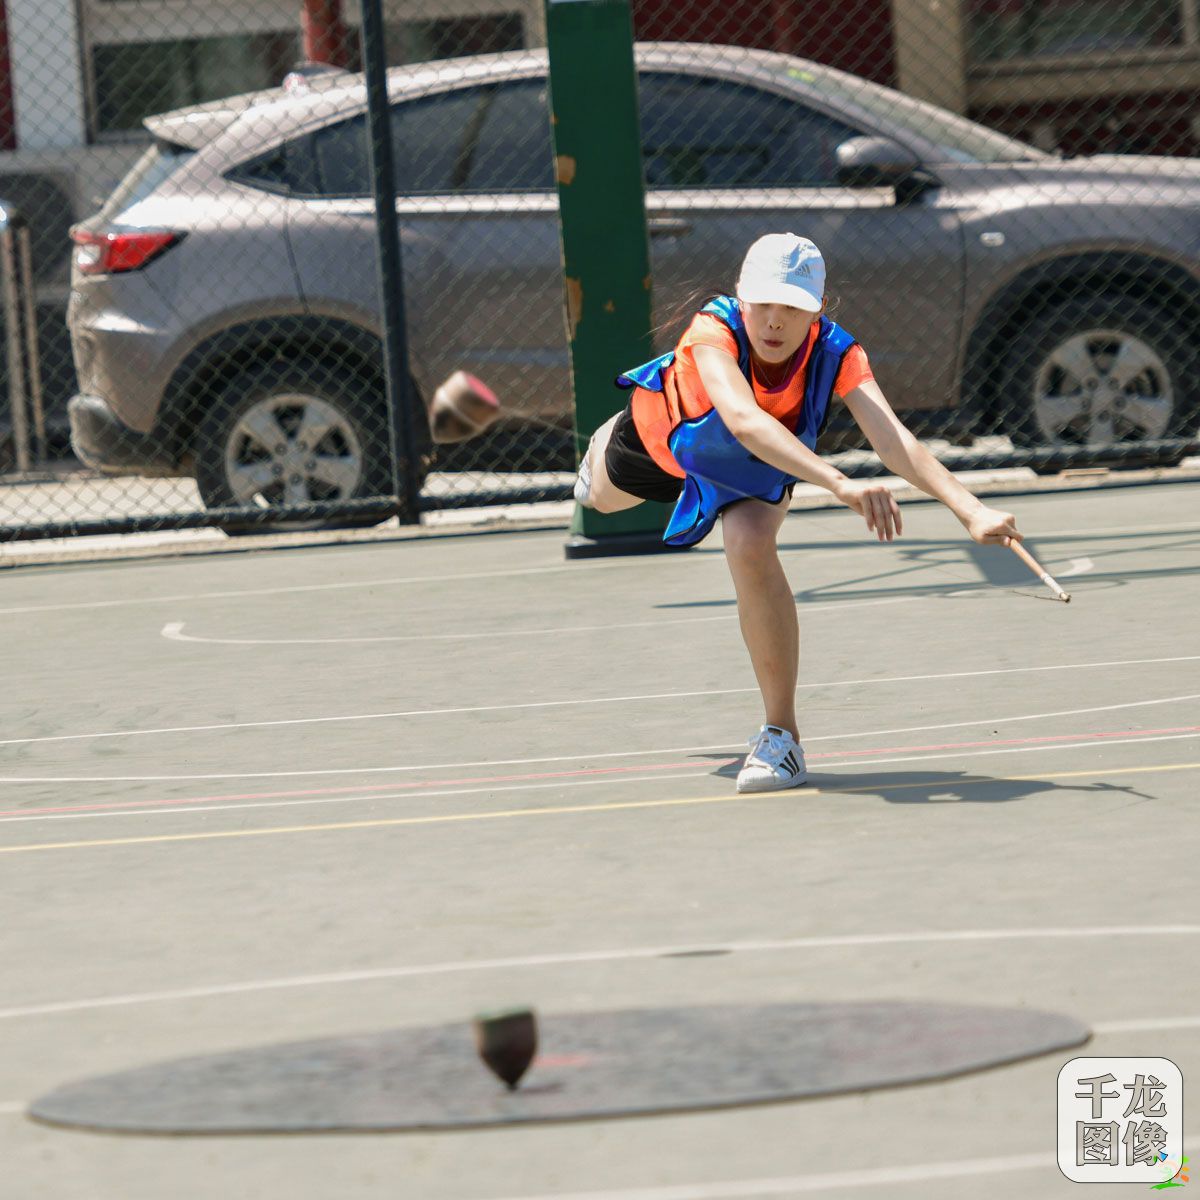 提高少数民族传统体育水平 2019年北京陀螺邀请赛举行